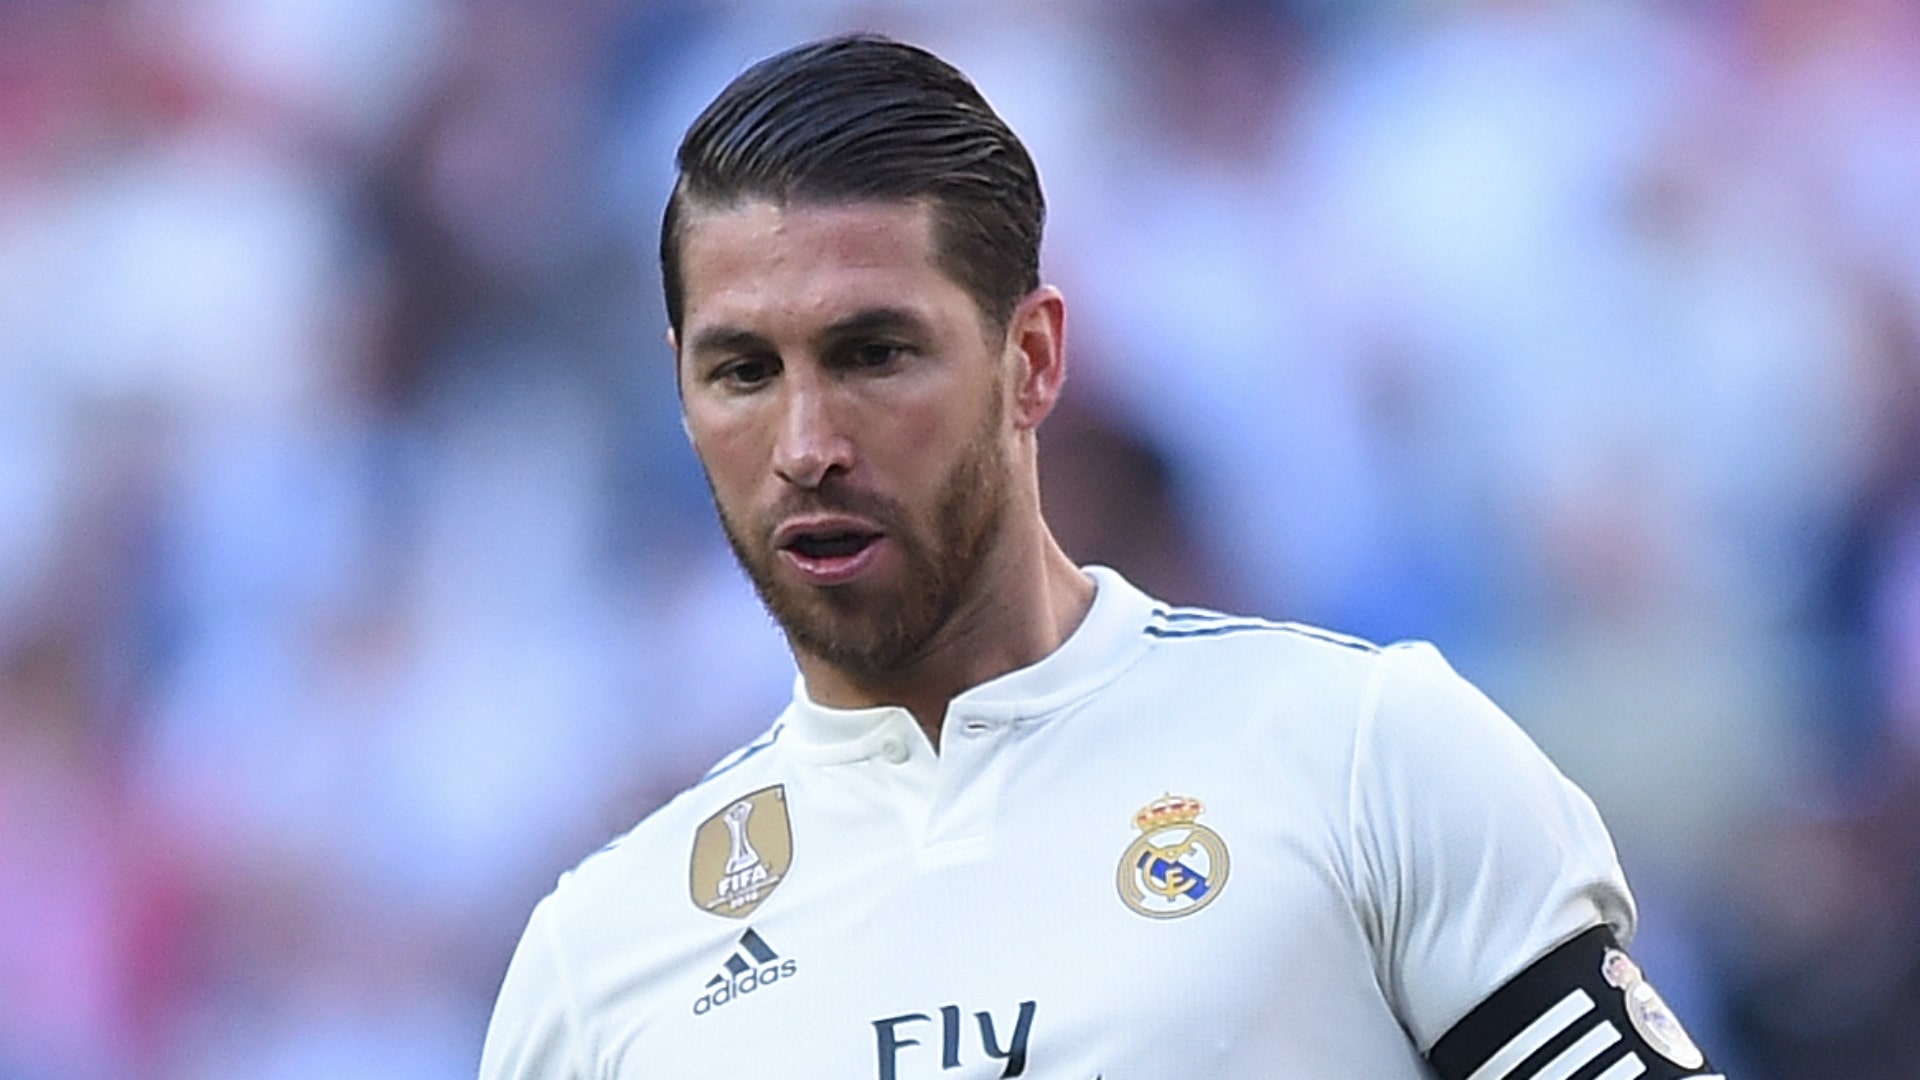 Căpitanul lui Real Madrid ar putea pleca de la echipă